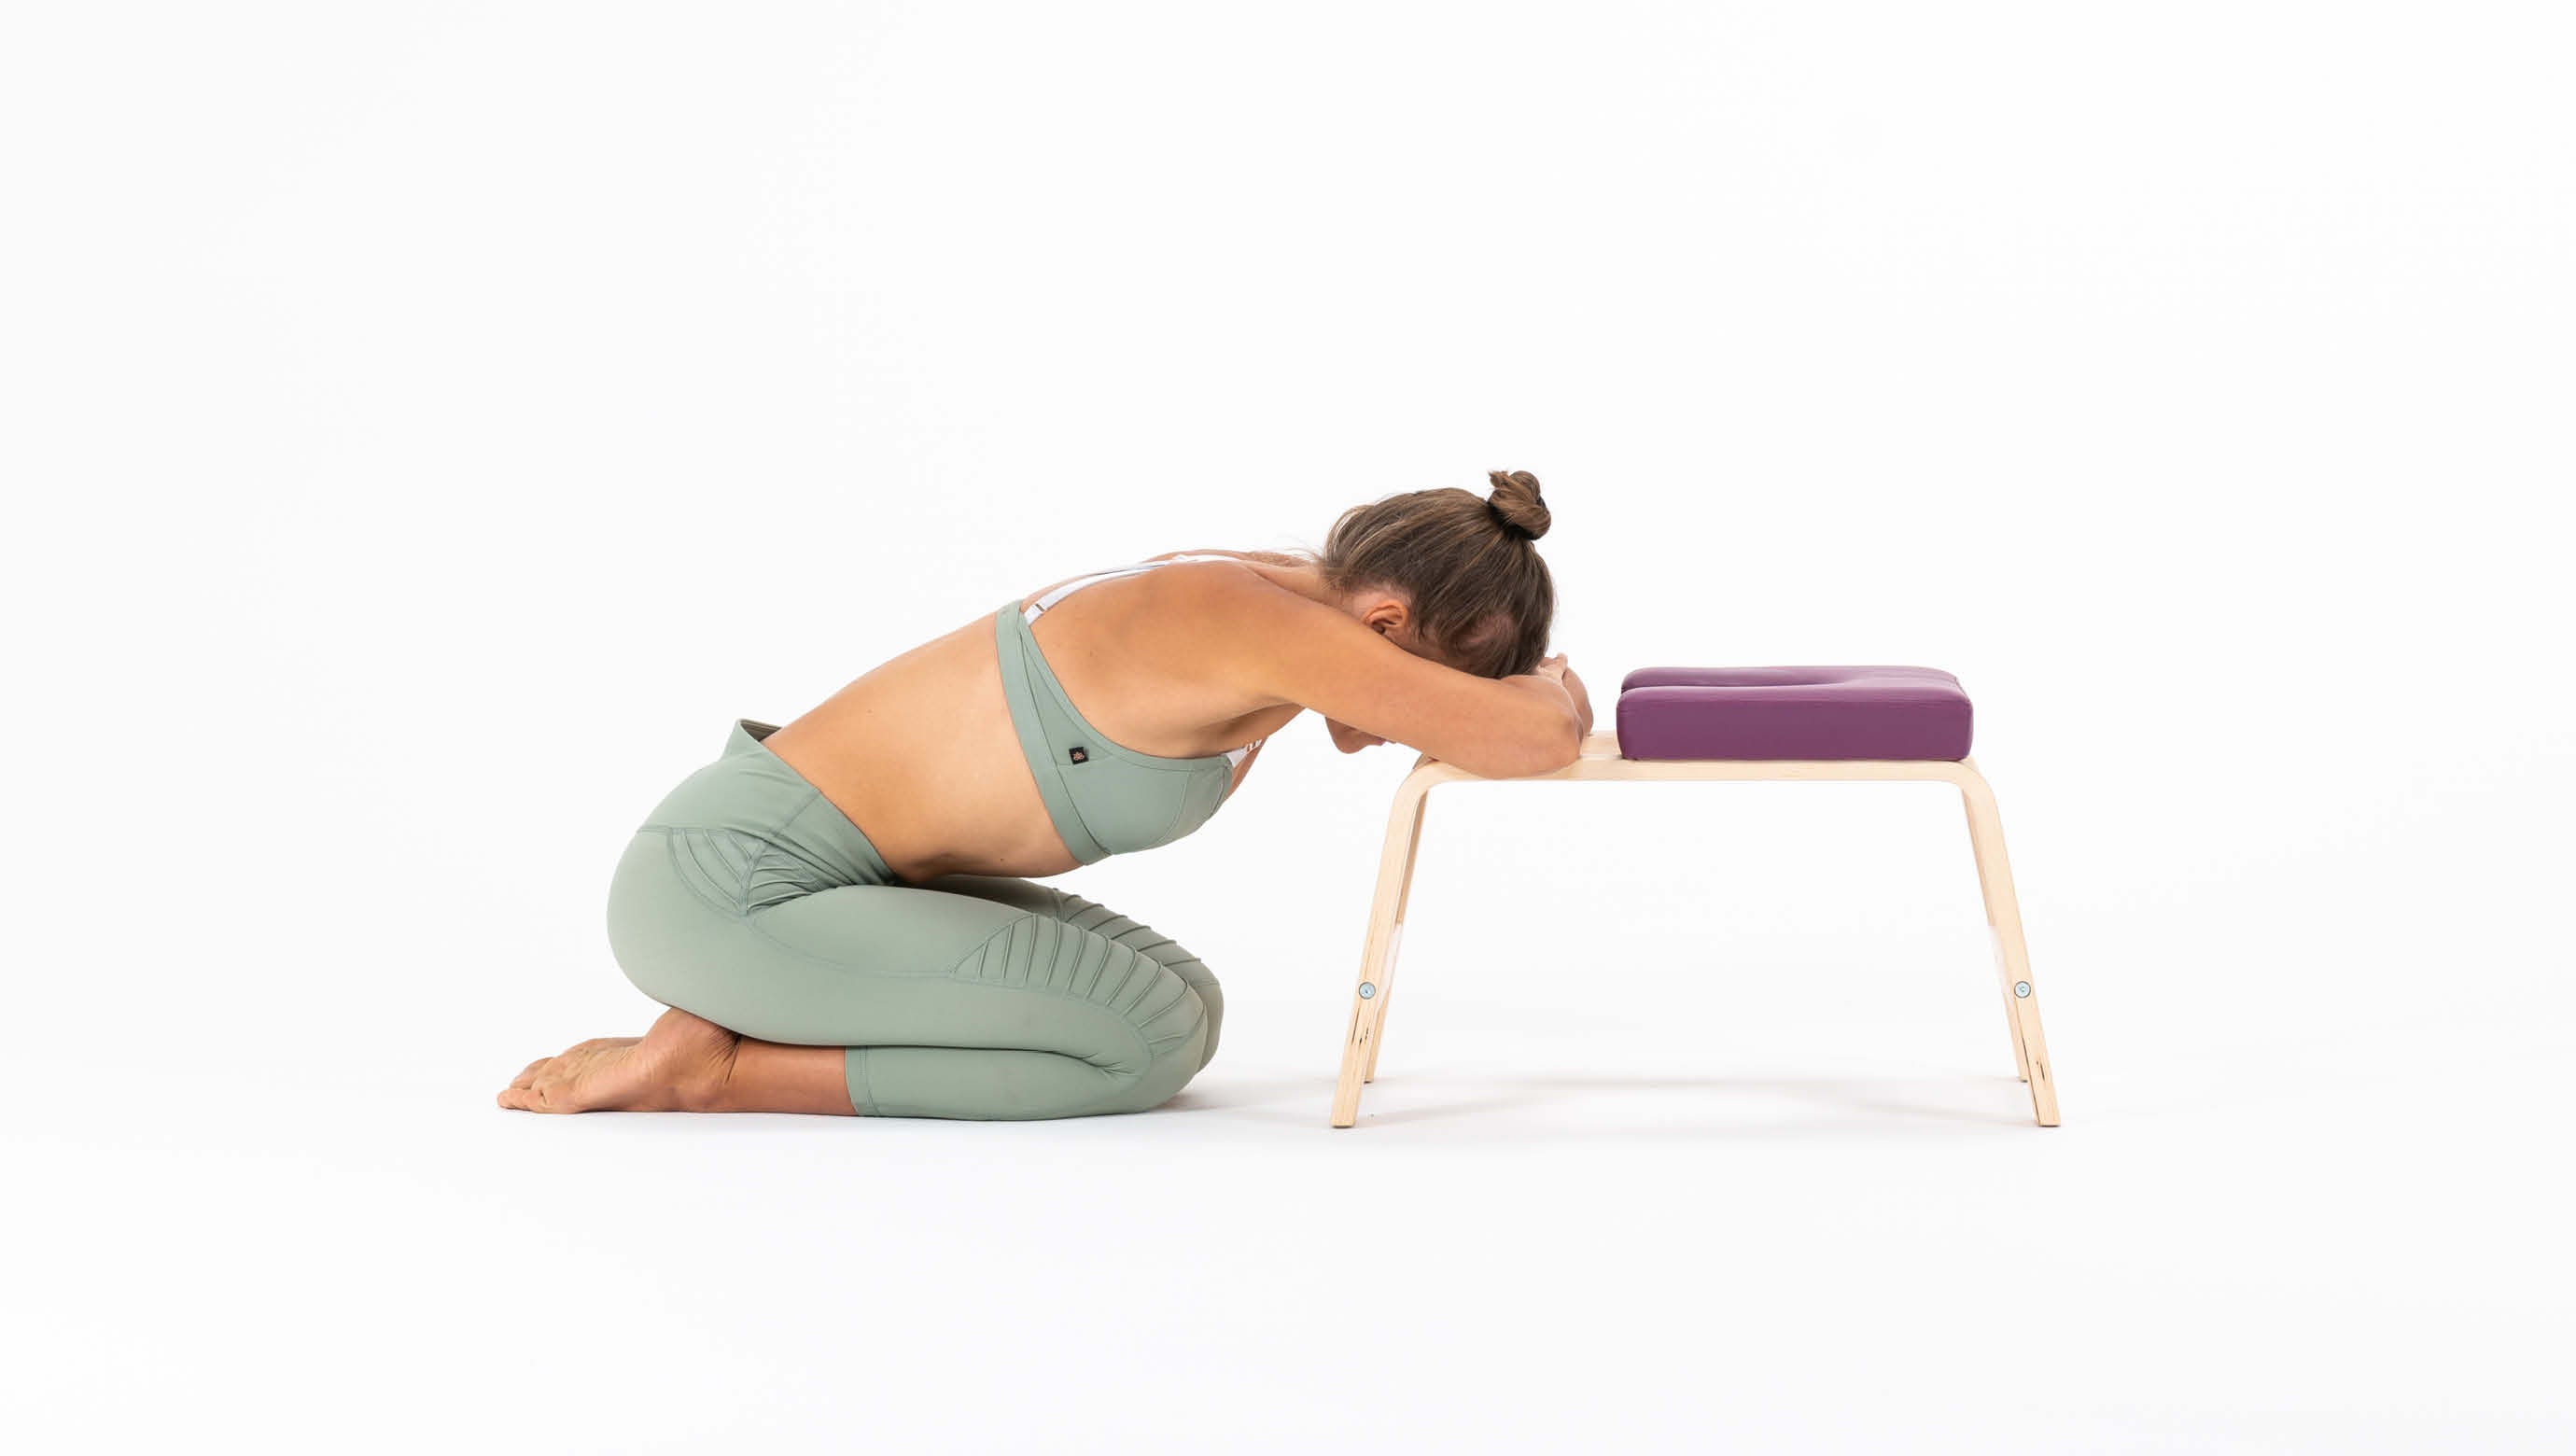 Extended Child's Pose Stretch - Balasana (yoga poses easy) - YouTube